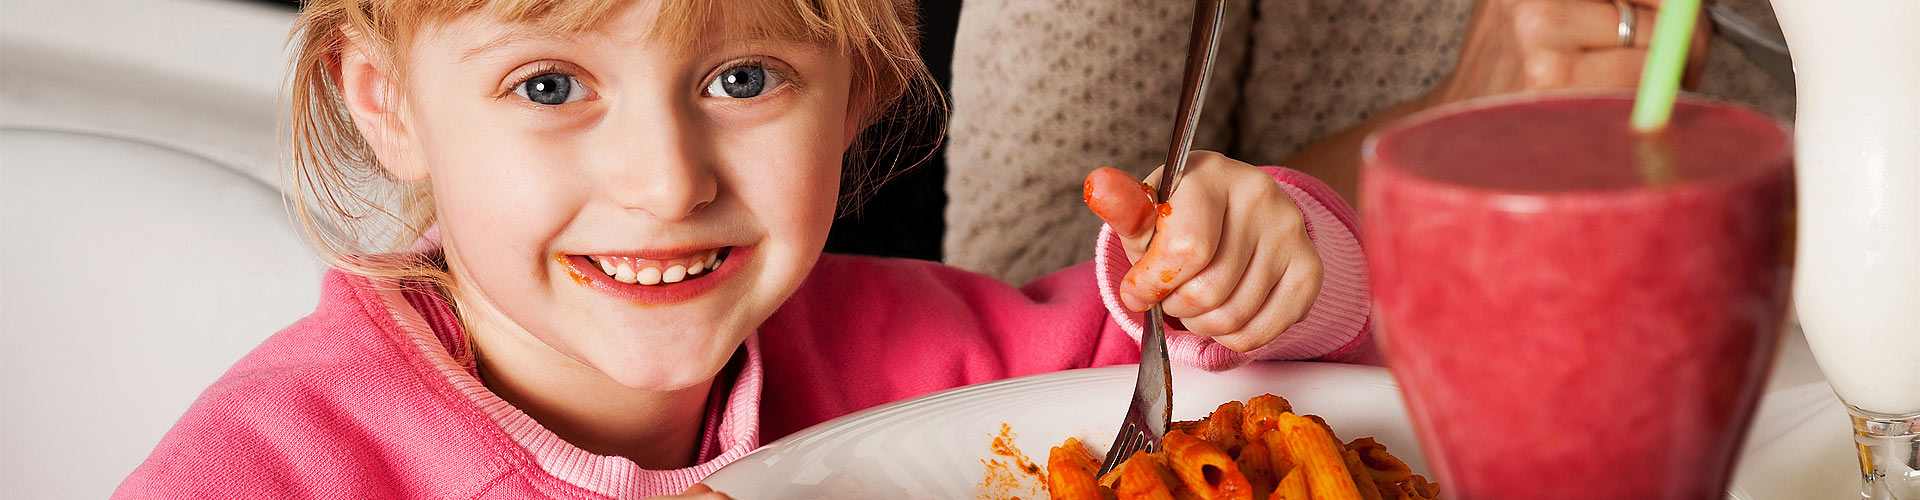 Restaurantes baratos para ir con niños en Almodóvar del Río